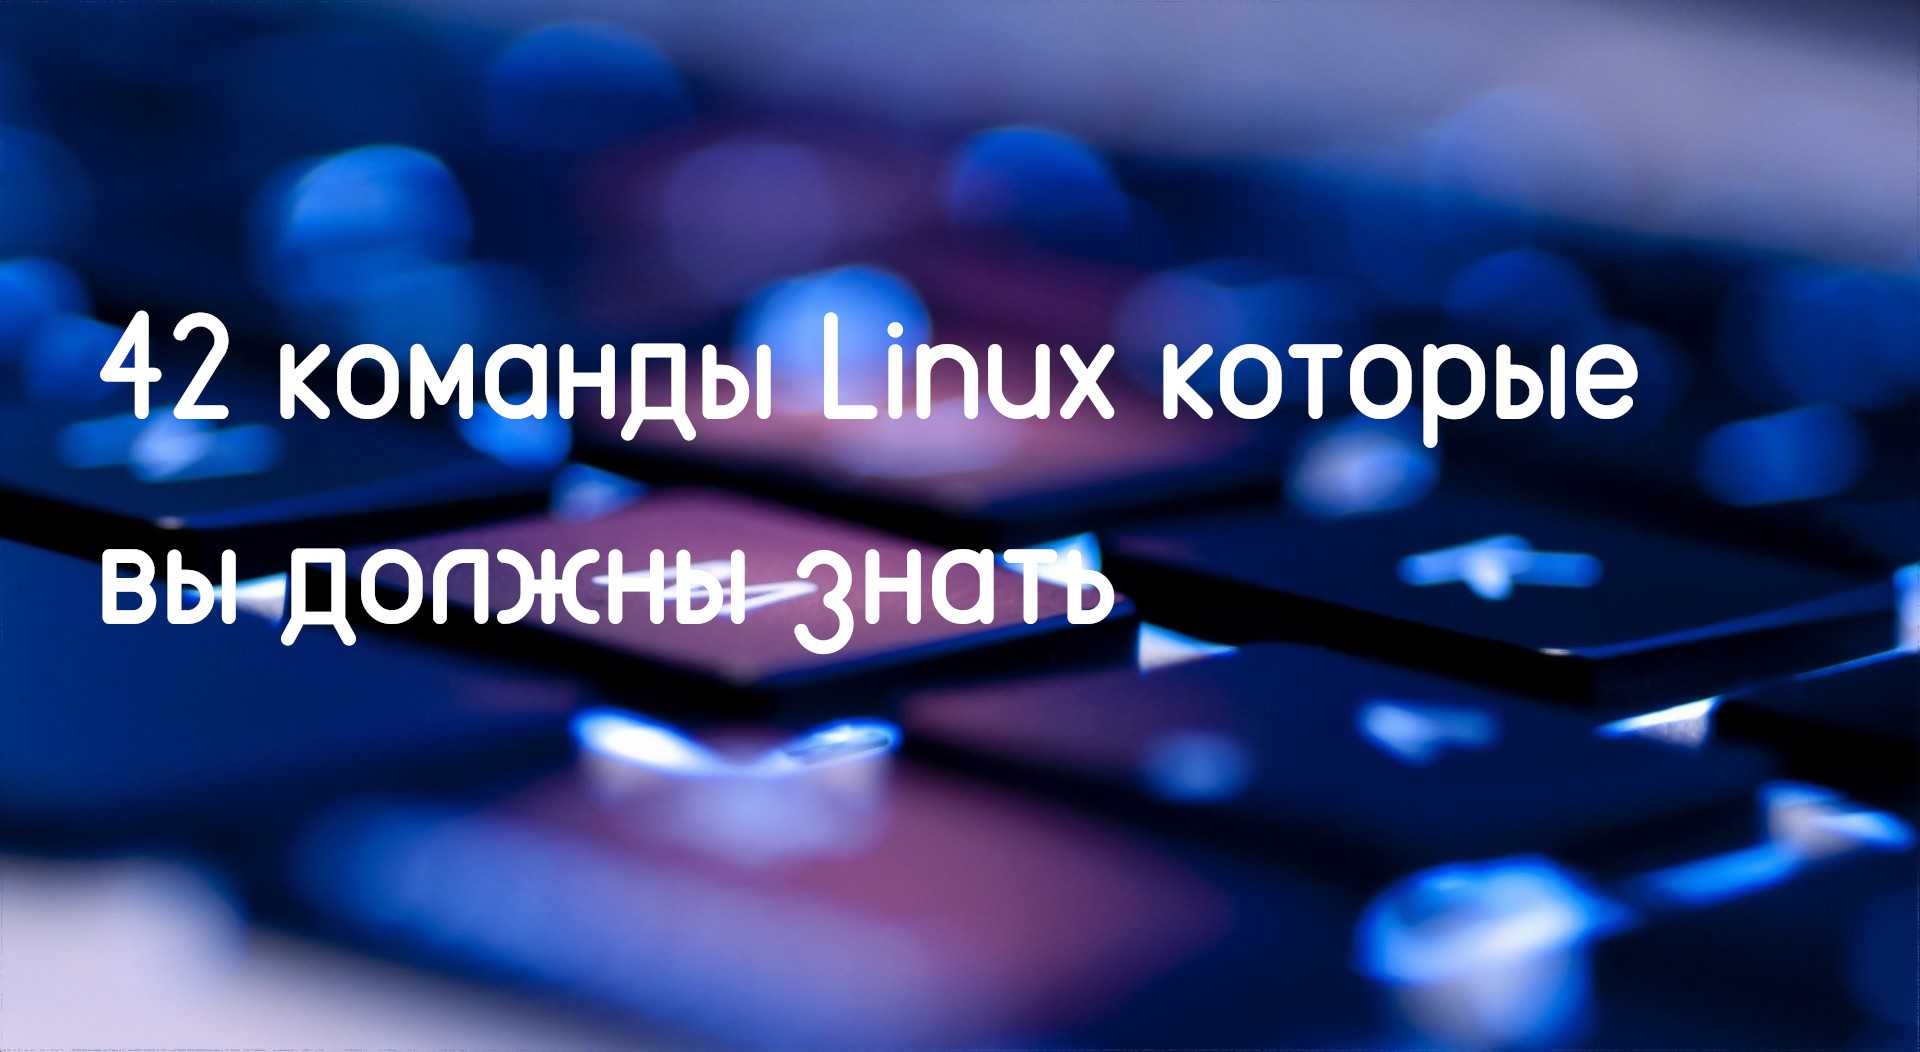 42 команды linux которые вы должны знать